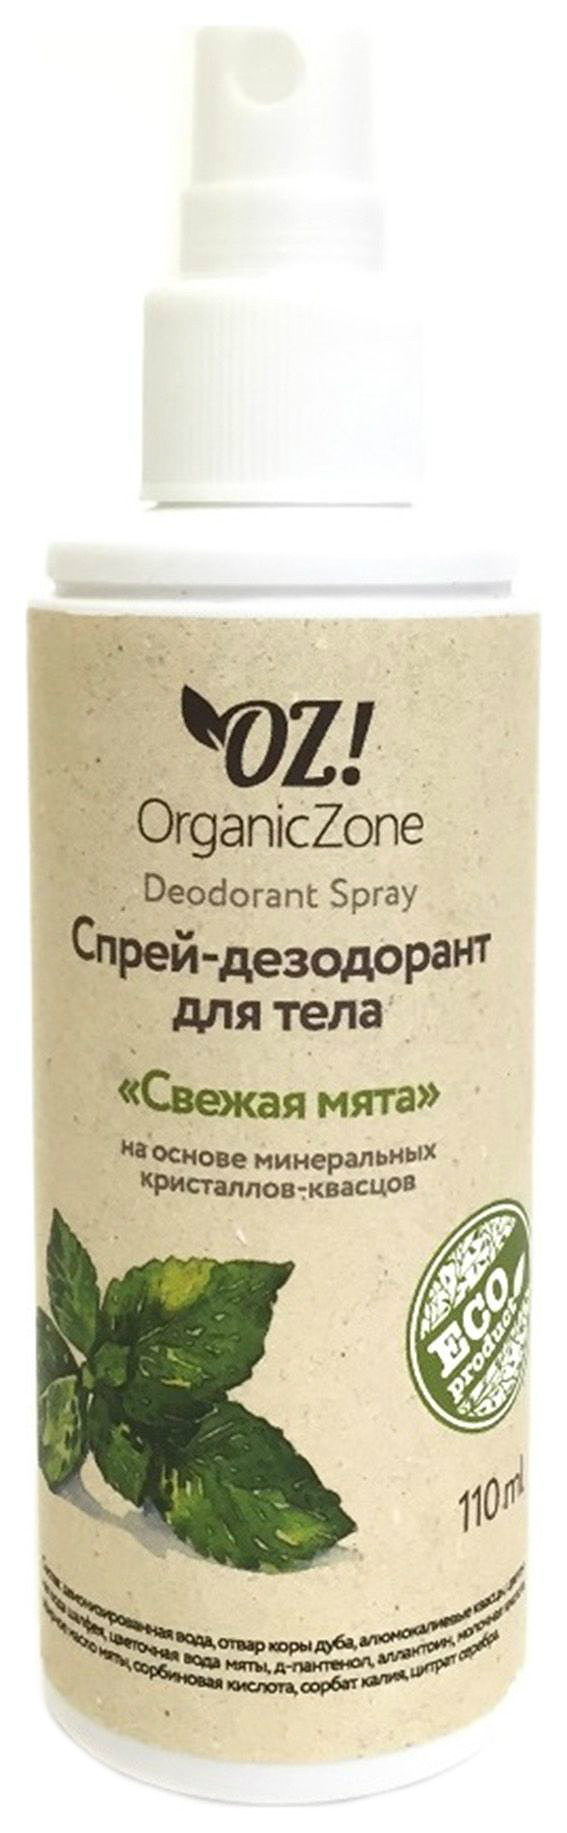 Дезодорант OrganicZone Свежая мята 110 мл дезодорант axe phoenix арктическая мята и освежающие травы 150 мл